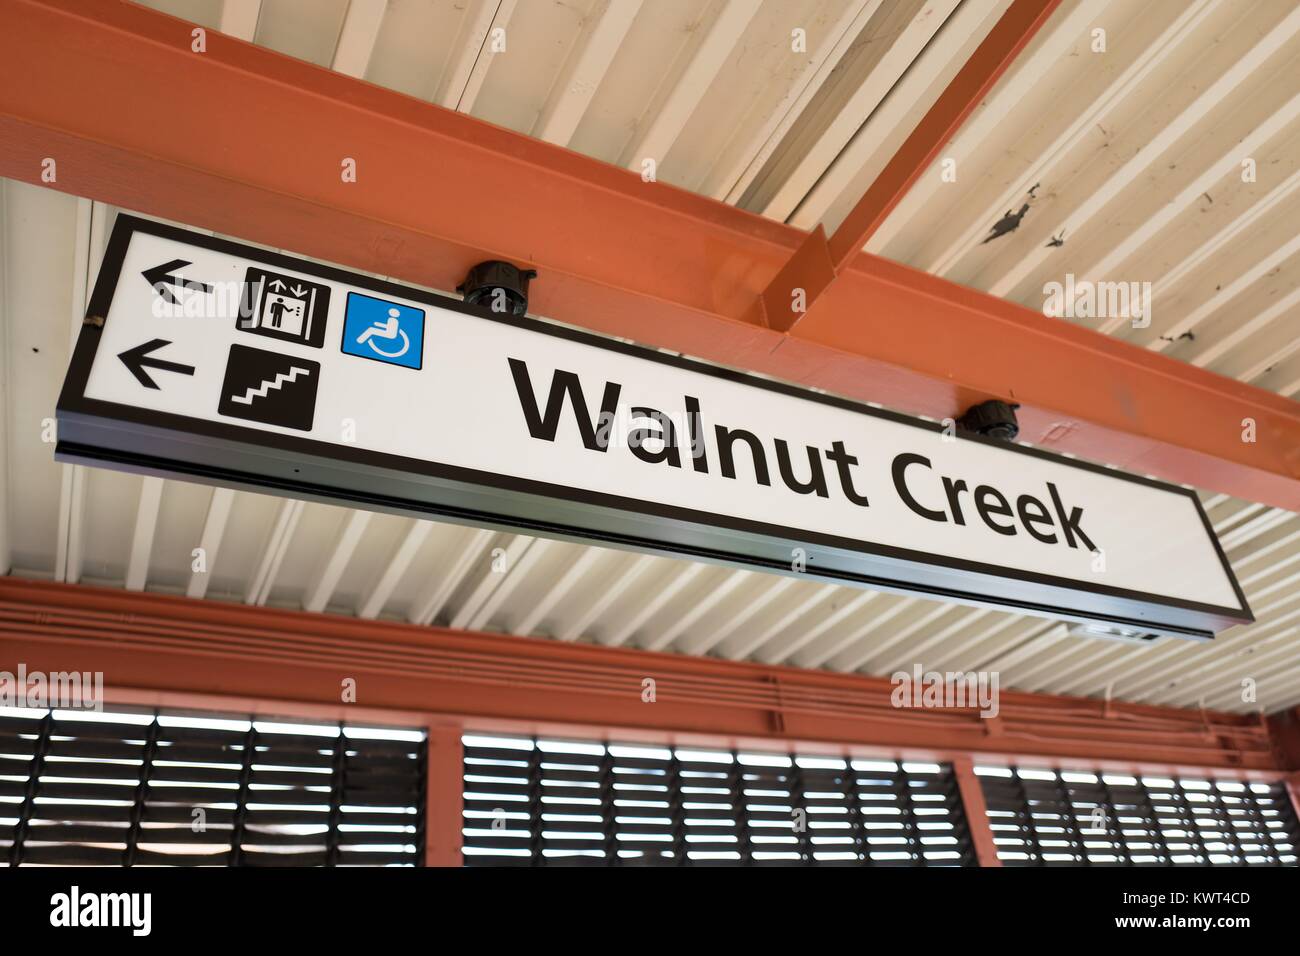 Digital Signage per la Walnut Creek, California stazione della Bay Area Rapid Transit (BART) Sistema ferroviario leggero, 13 settembre 2017. Foto Stock